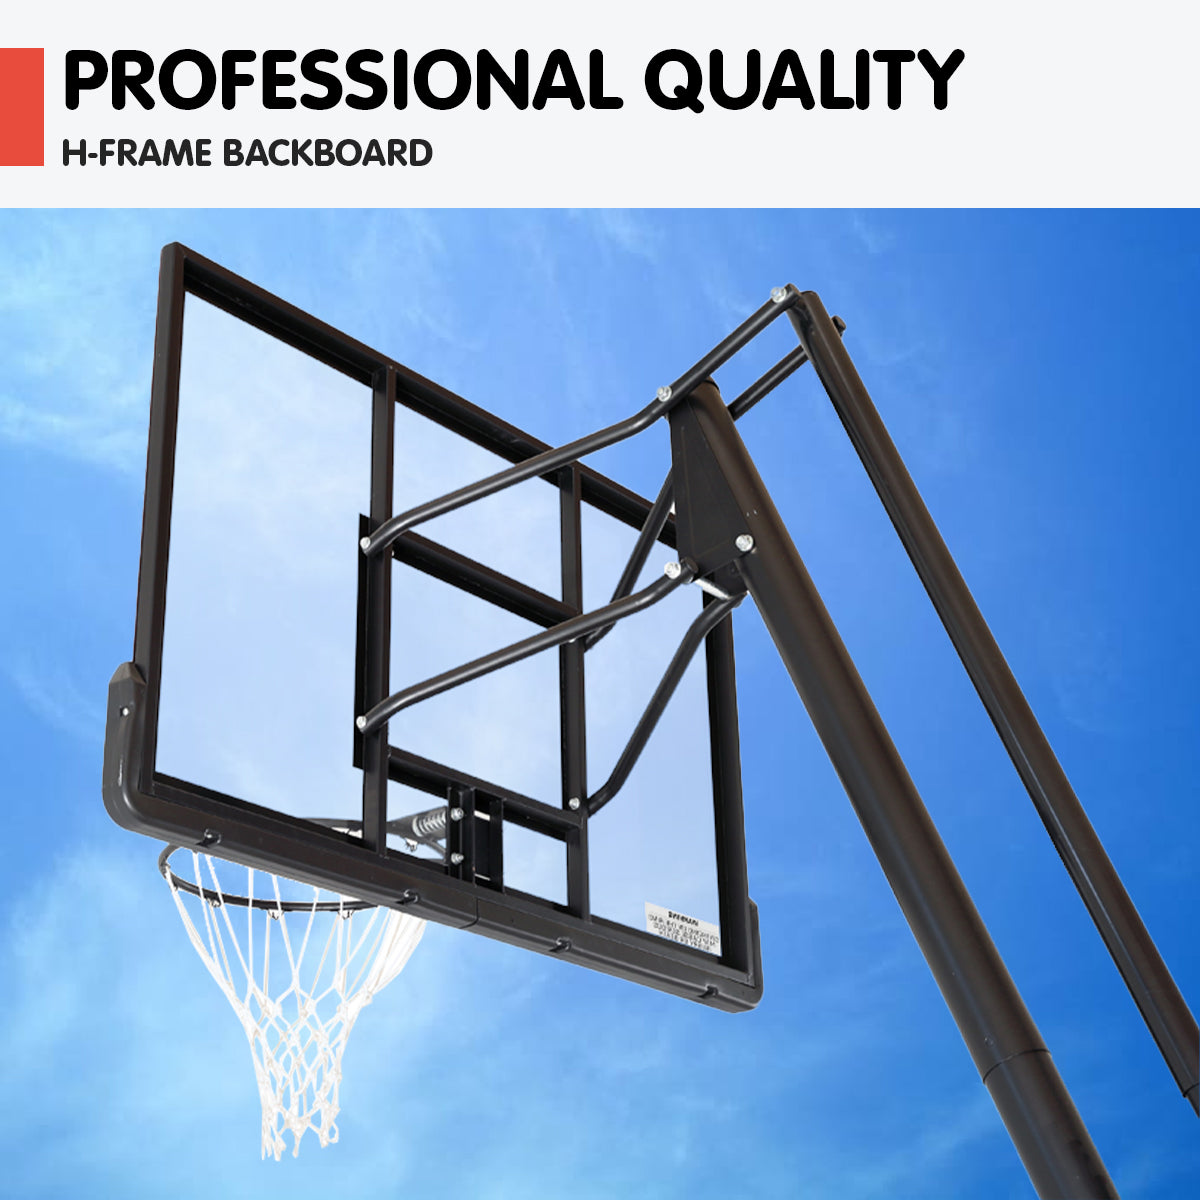 Kahuna Portable Basketball Ring Stand w/ Adjustable Height Ball Holder - SILBERSHELL